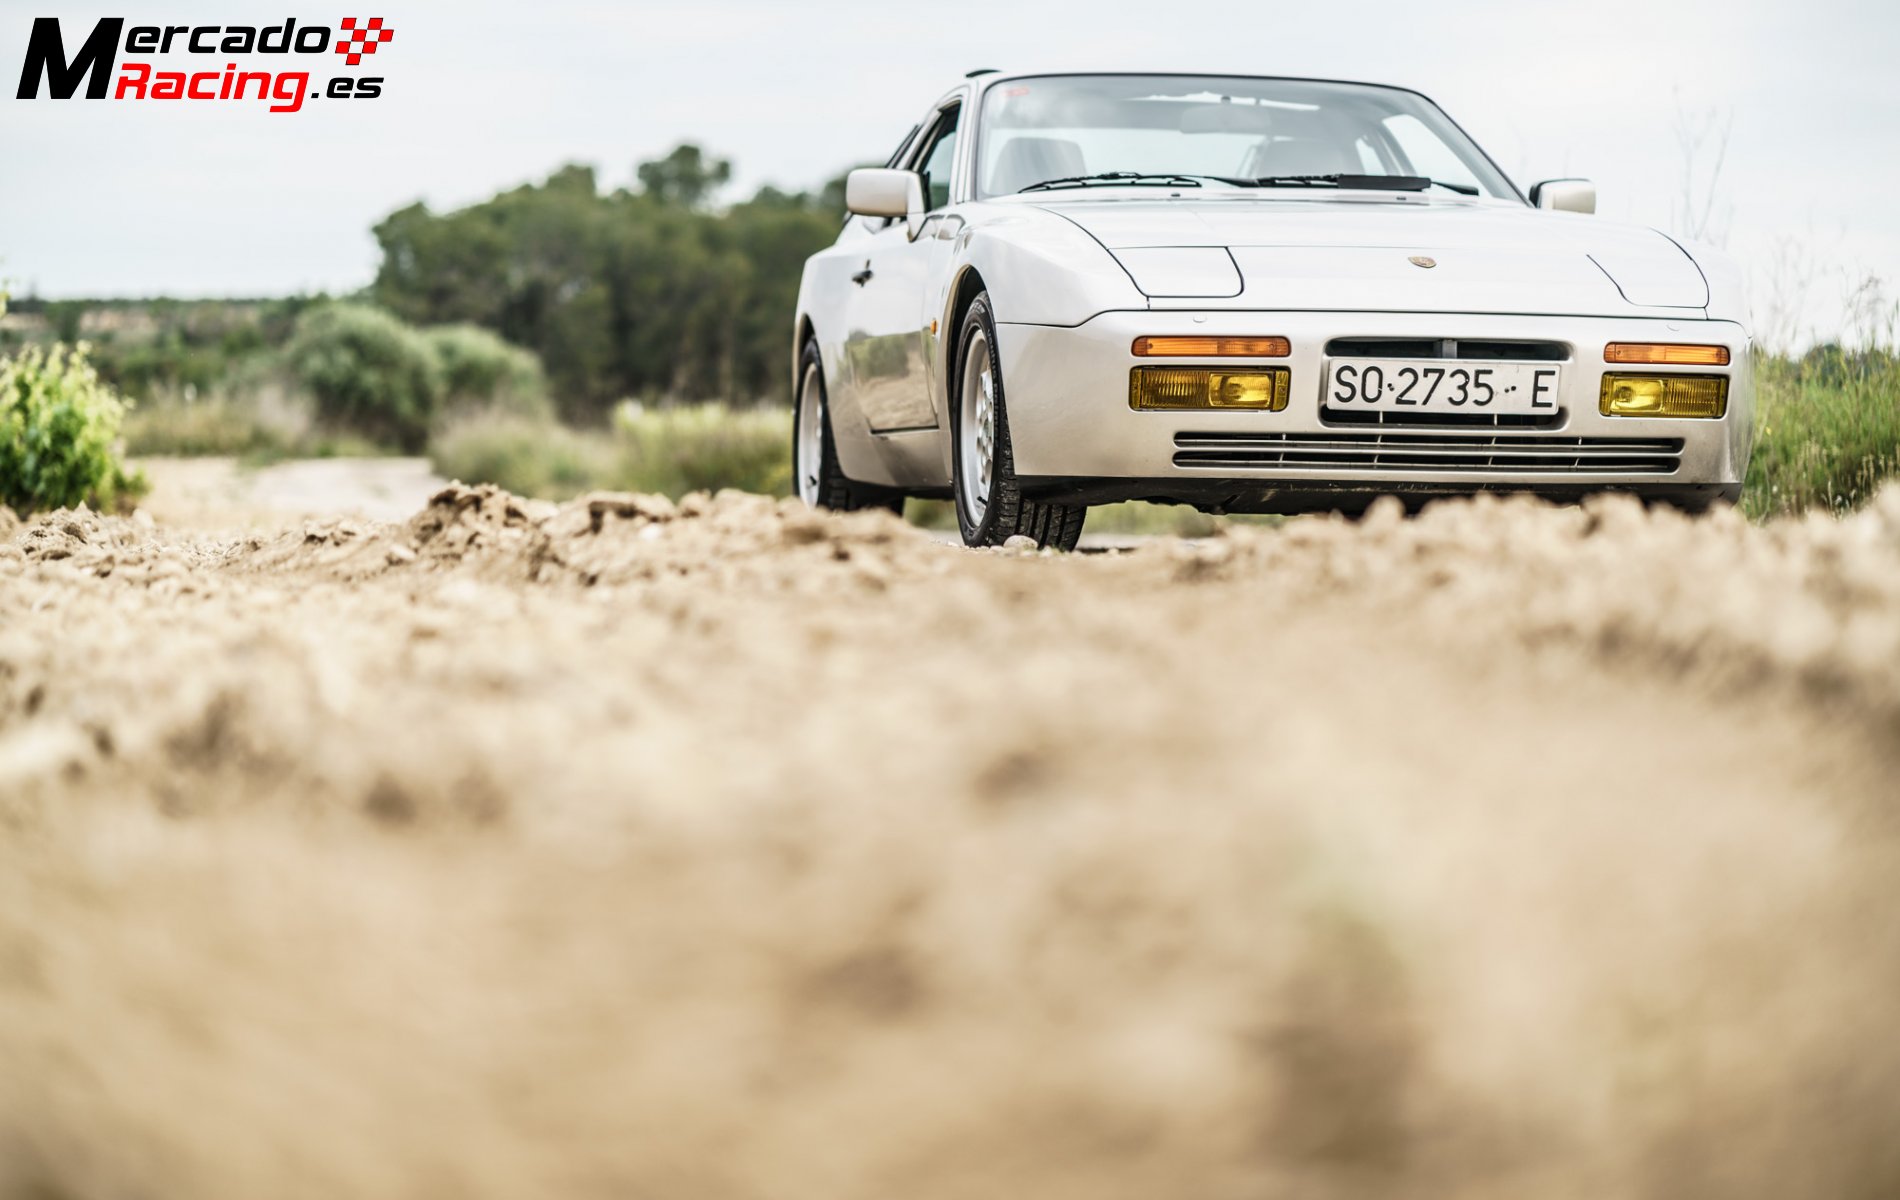 Porsche 944 turbo (951) restauracion completa